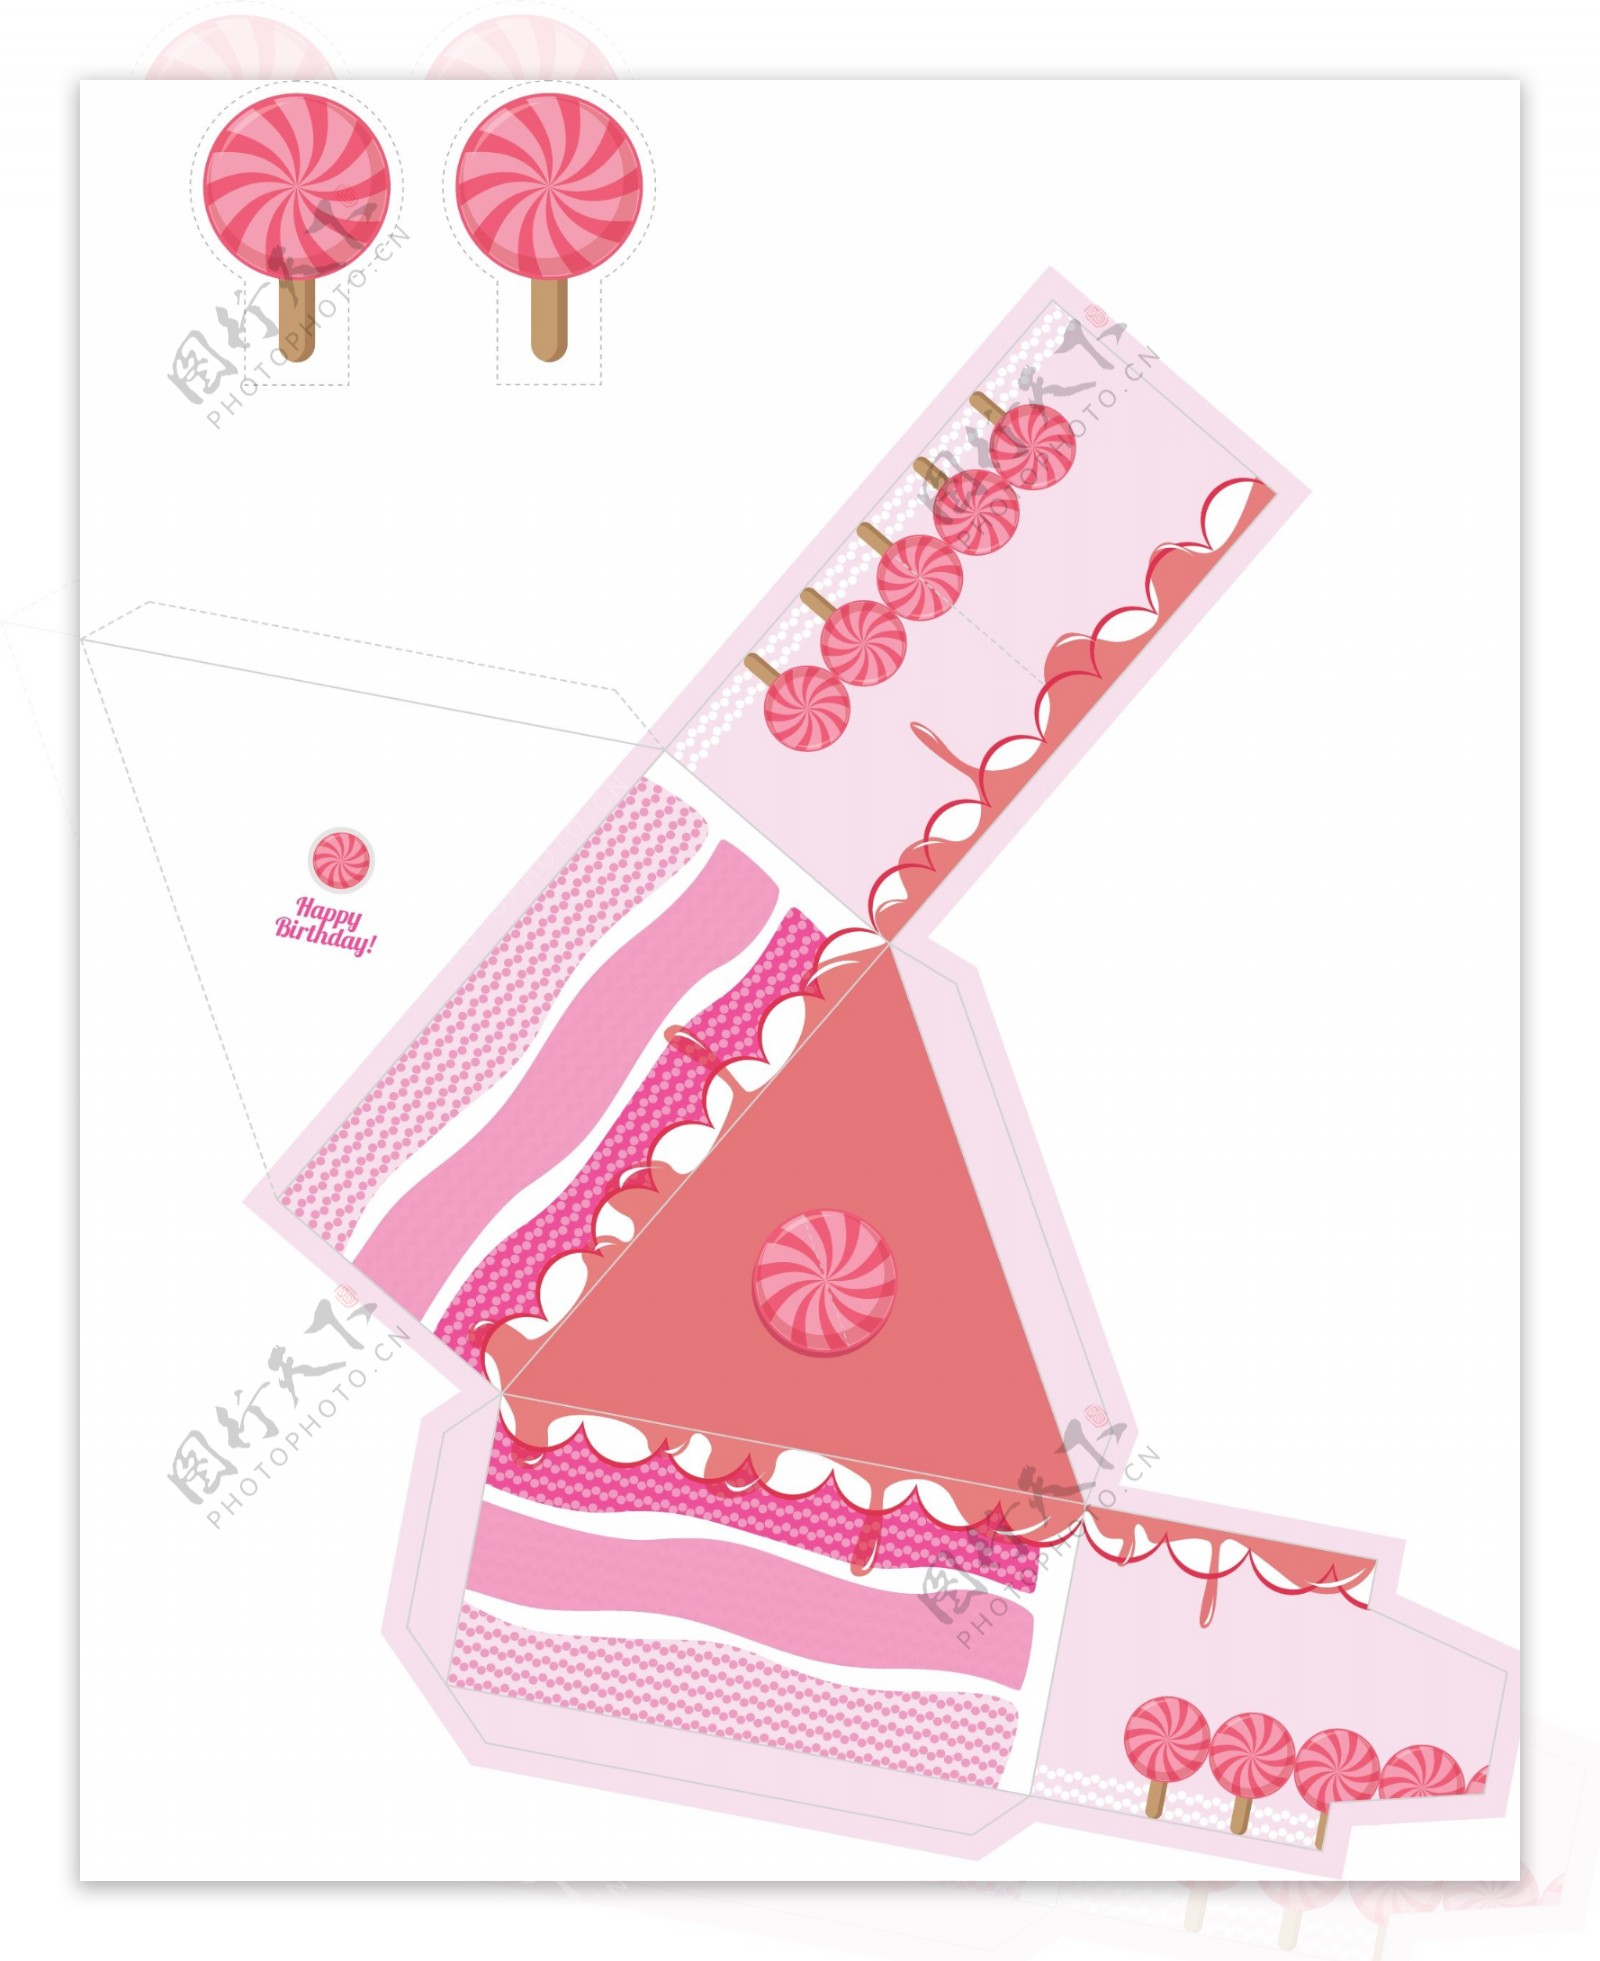 粉色蛋糕包装盒设计模板